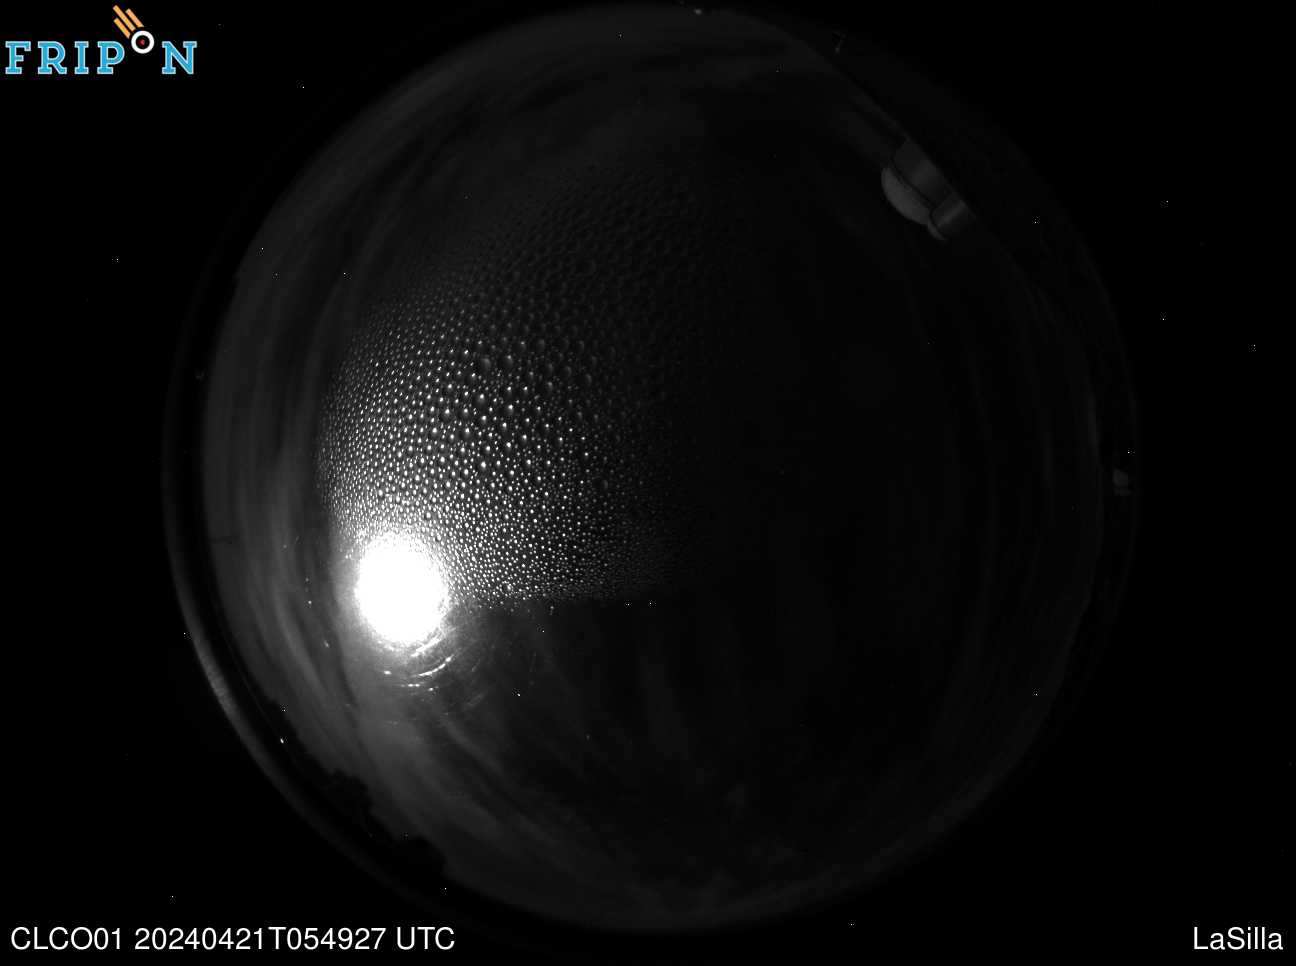 Full size image detection La Silla - ESO (CLCO01) Universal Time